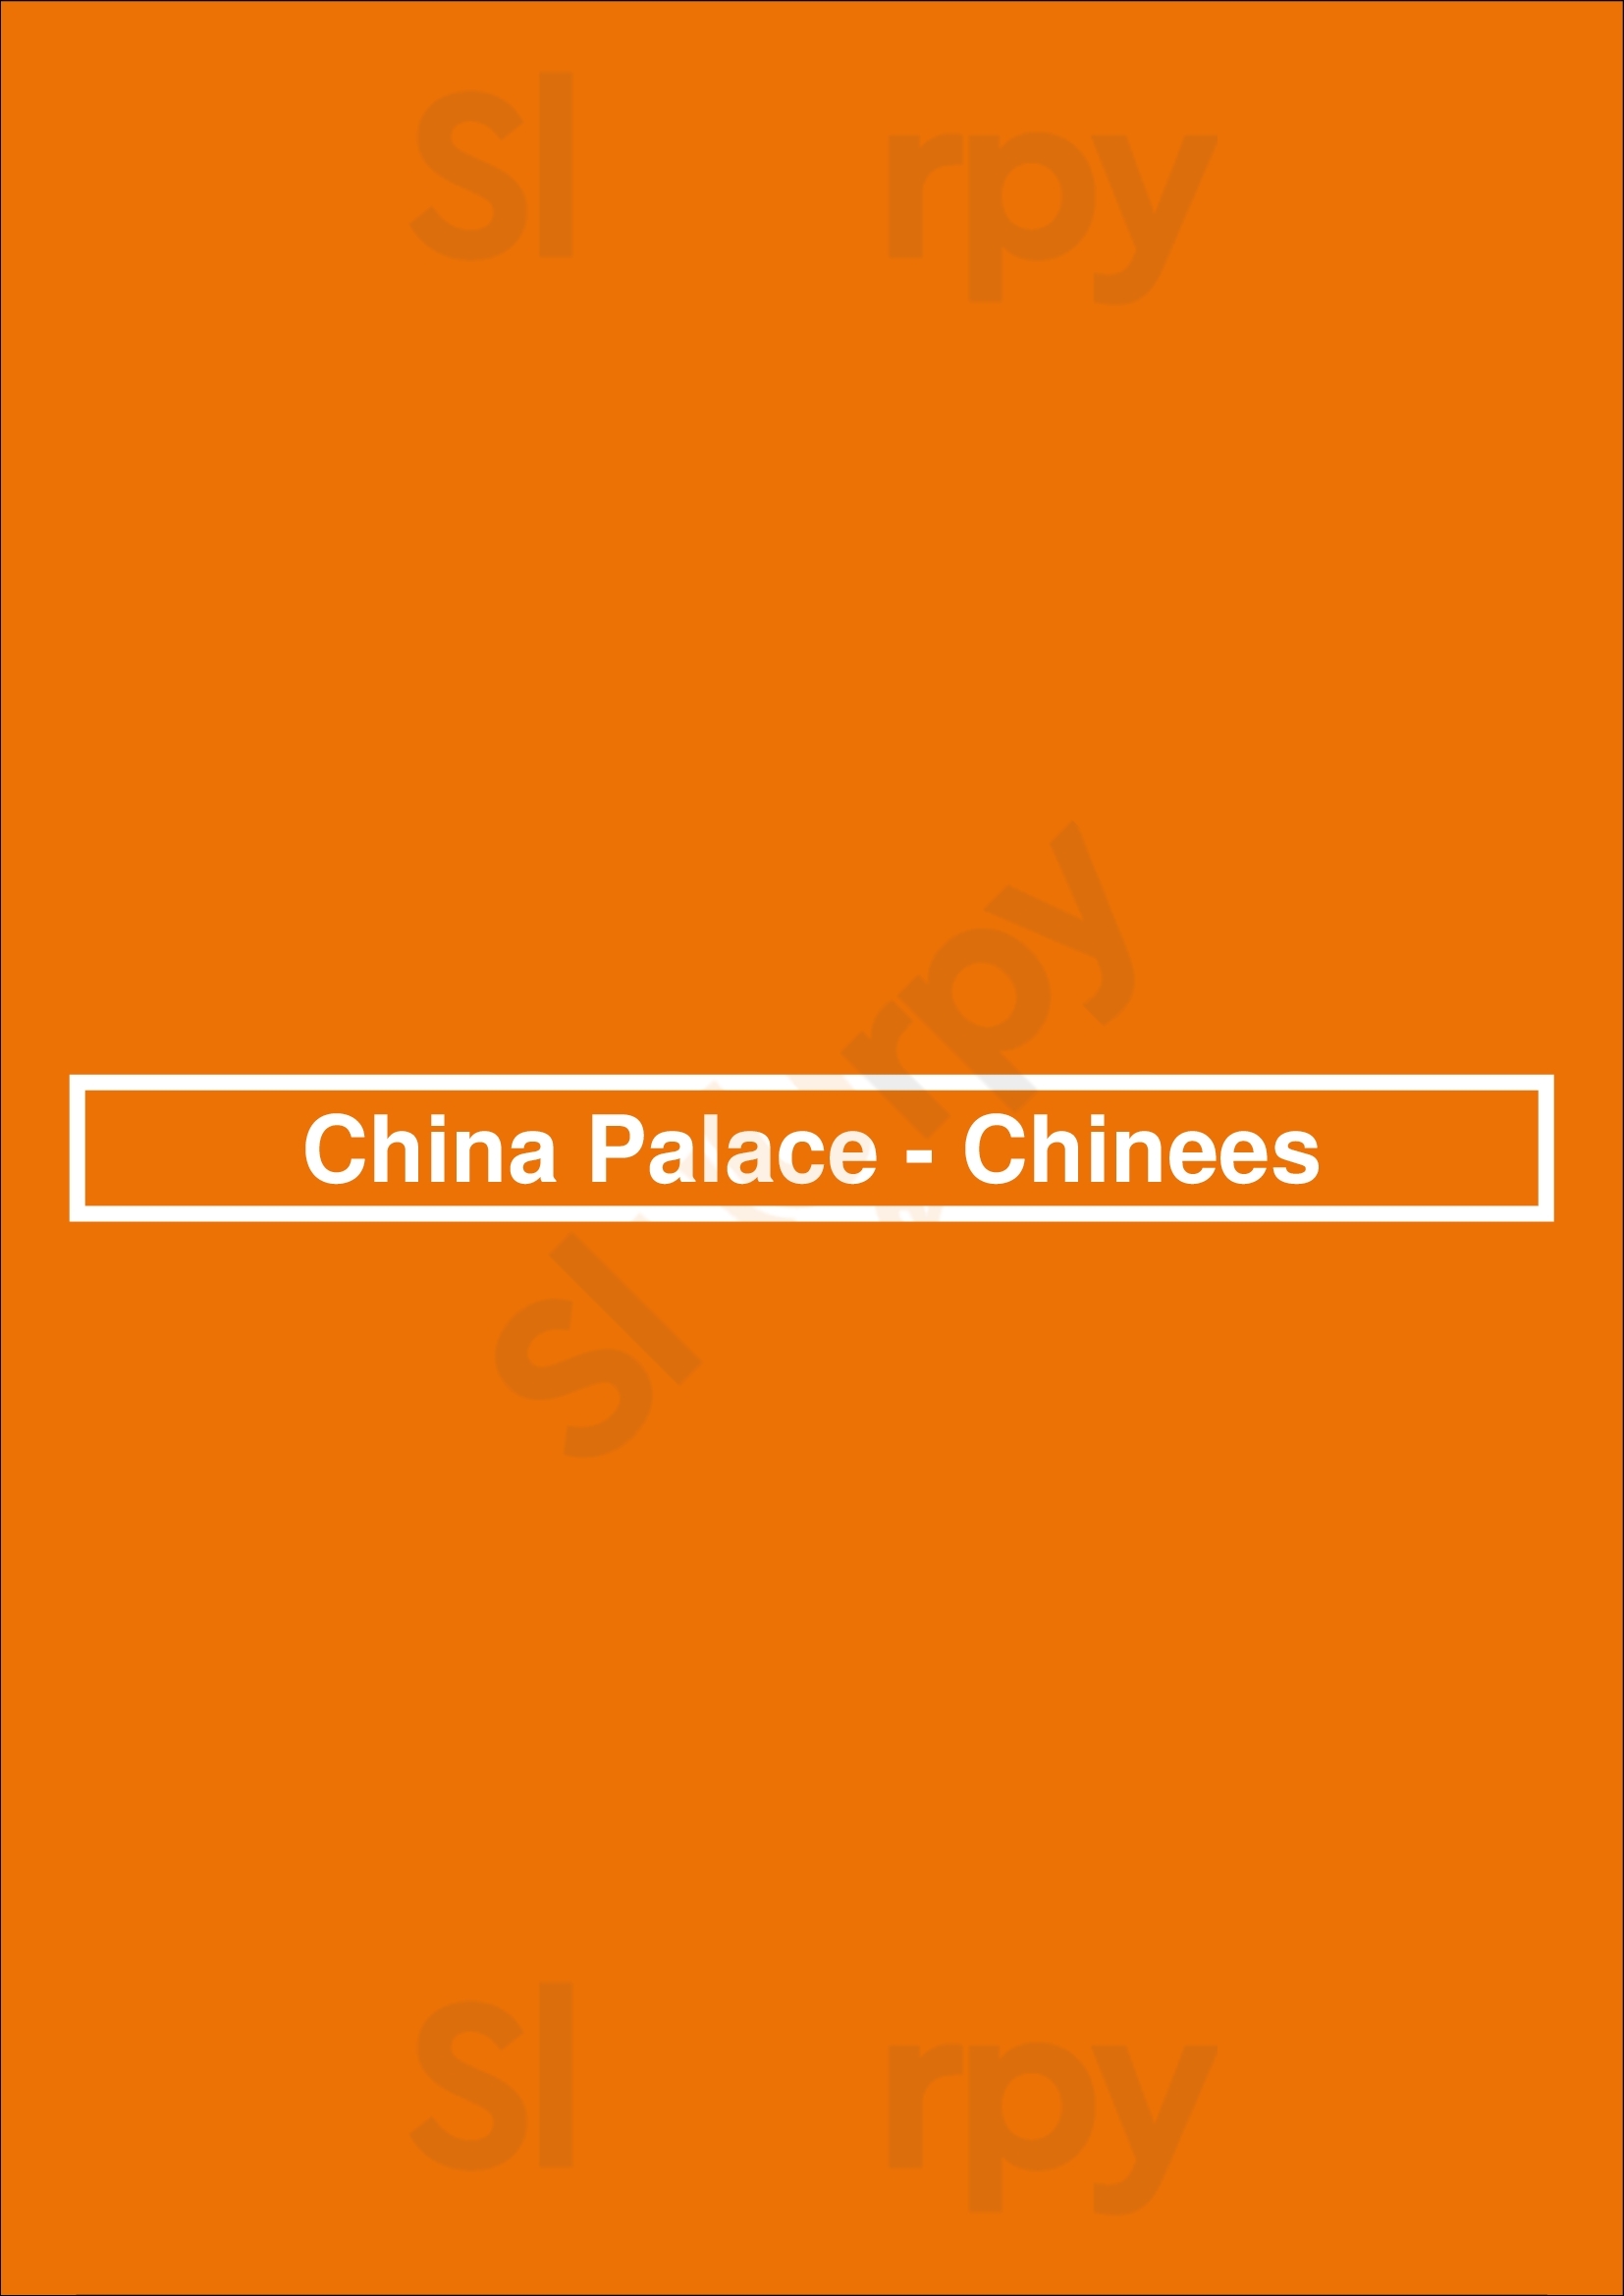 China Palace - Chinees Zwolle Menu - 1